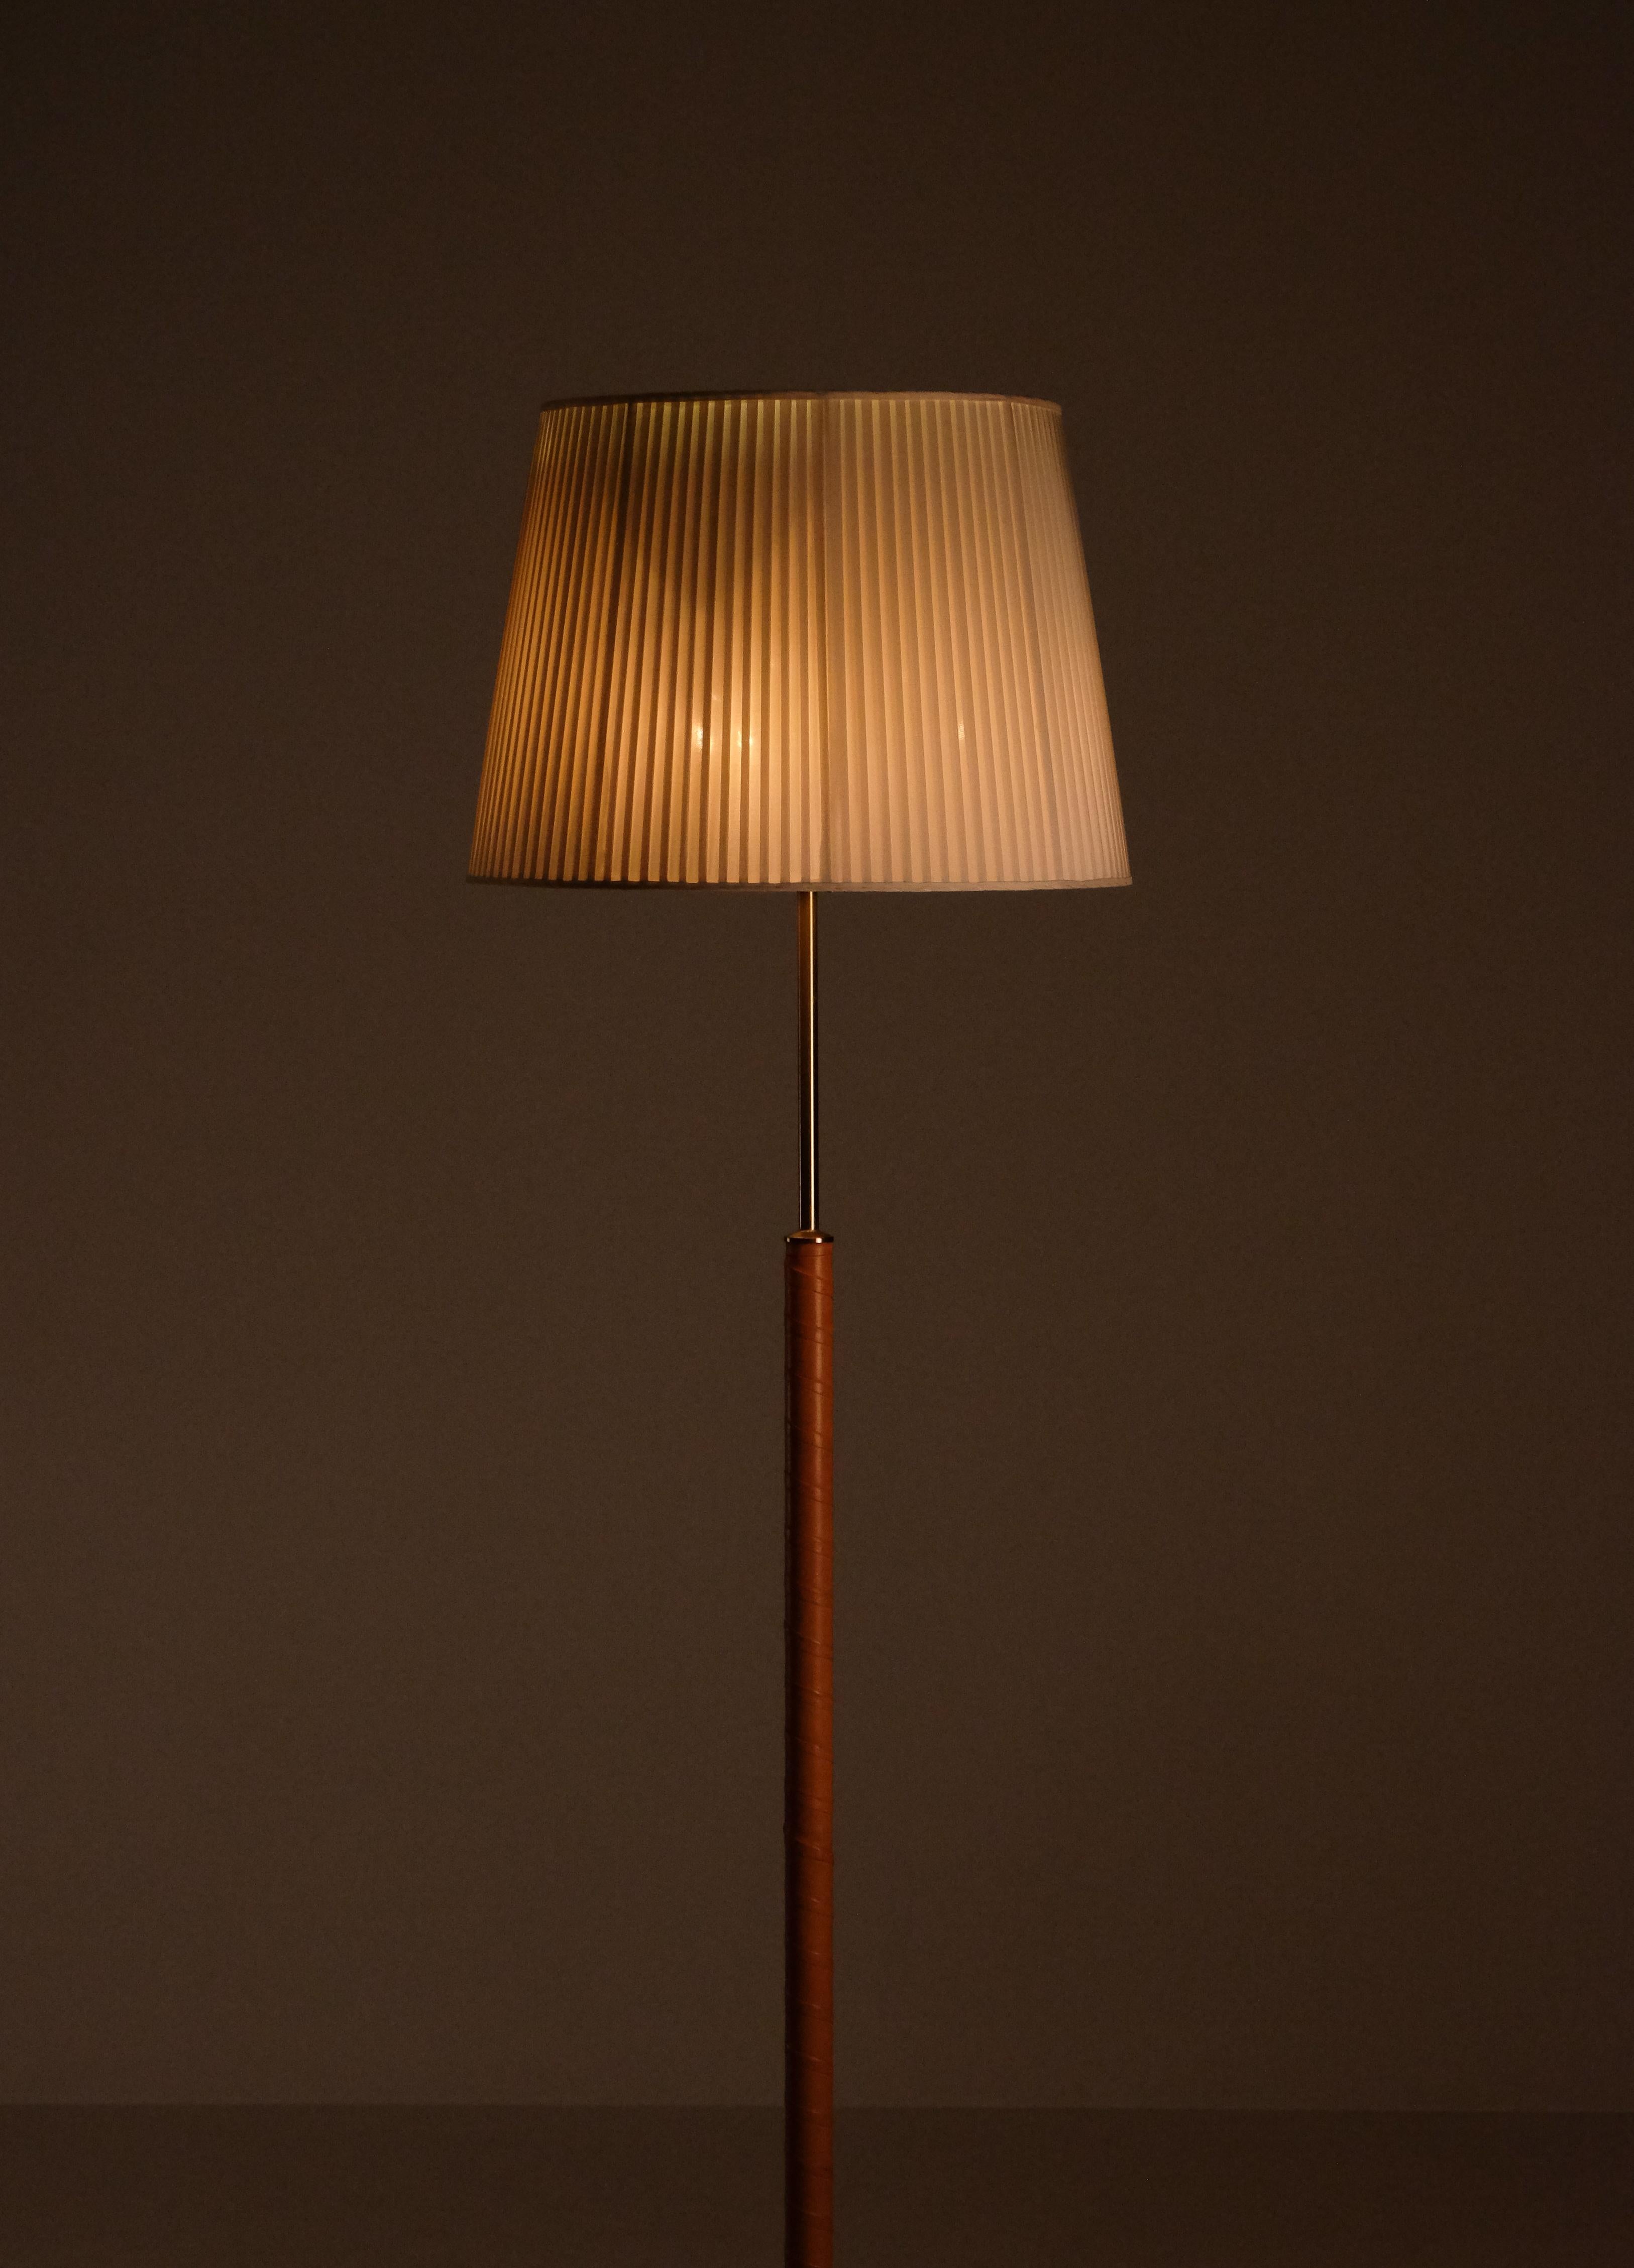 Conçu par Josef Franks, modèle 2148, produit par Svenskt Tenn.
Avec 4 lampes chacune, contrôlées par deux interrupteurs discrets, permettant deux ambiances lumineuses différentes. 
Avec un abat-jour conique en tissu ivoire sur mesure et du cuir.